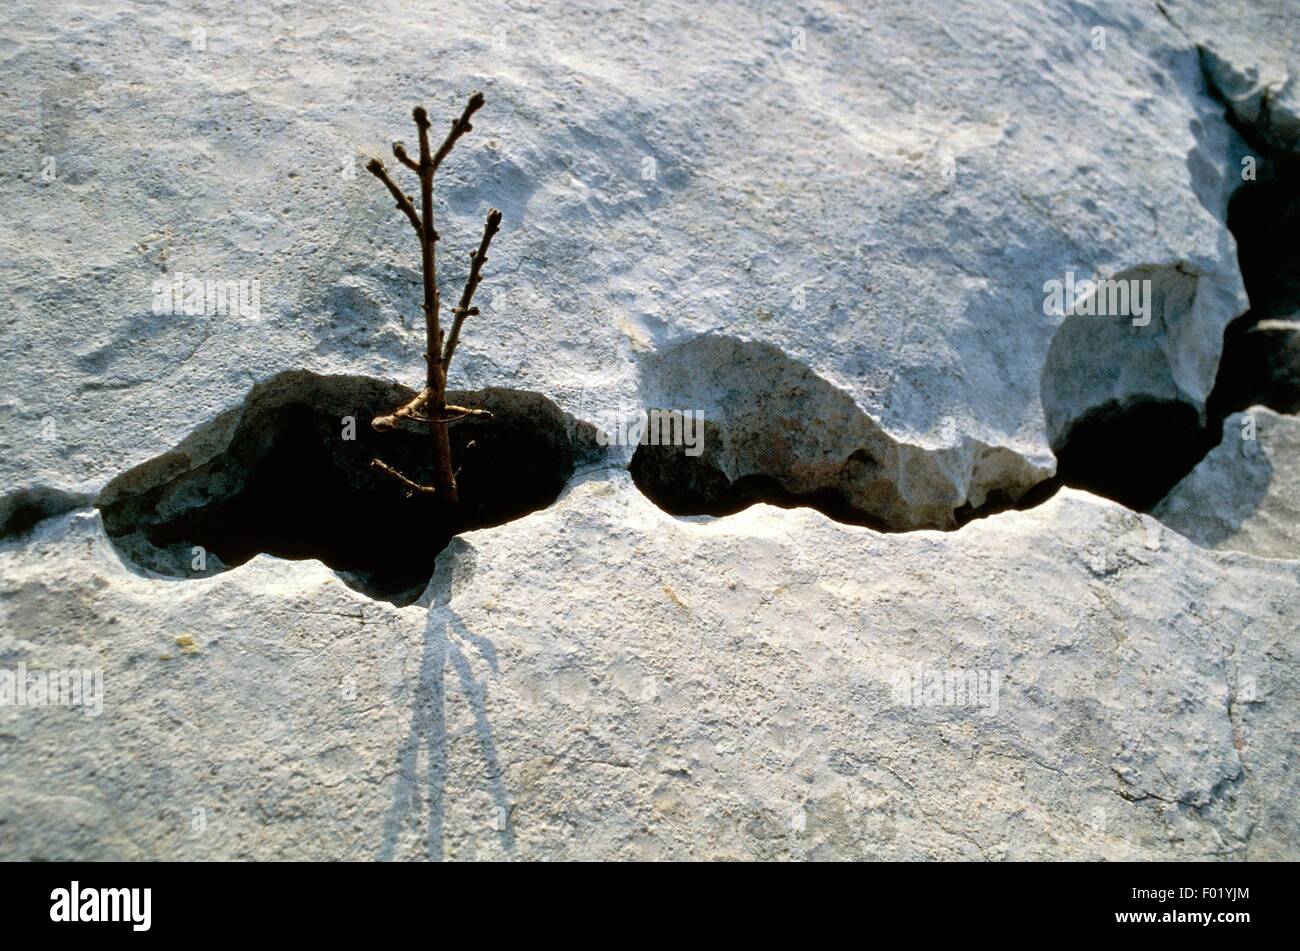 Platten aus kalkhaltigen Felsen nach dem Vorbild von alten Gletschern und Verkarstung, Monte Baldo, Venetien, Italien. Stockfoto